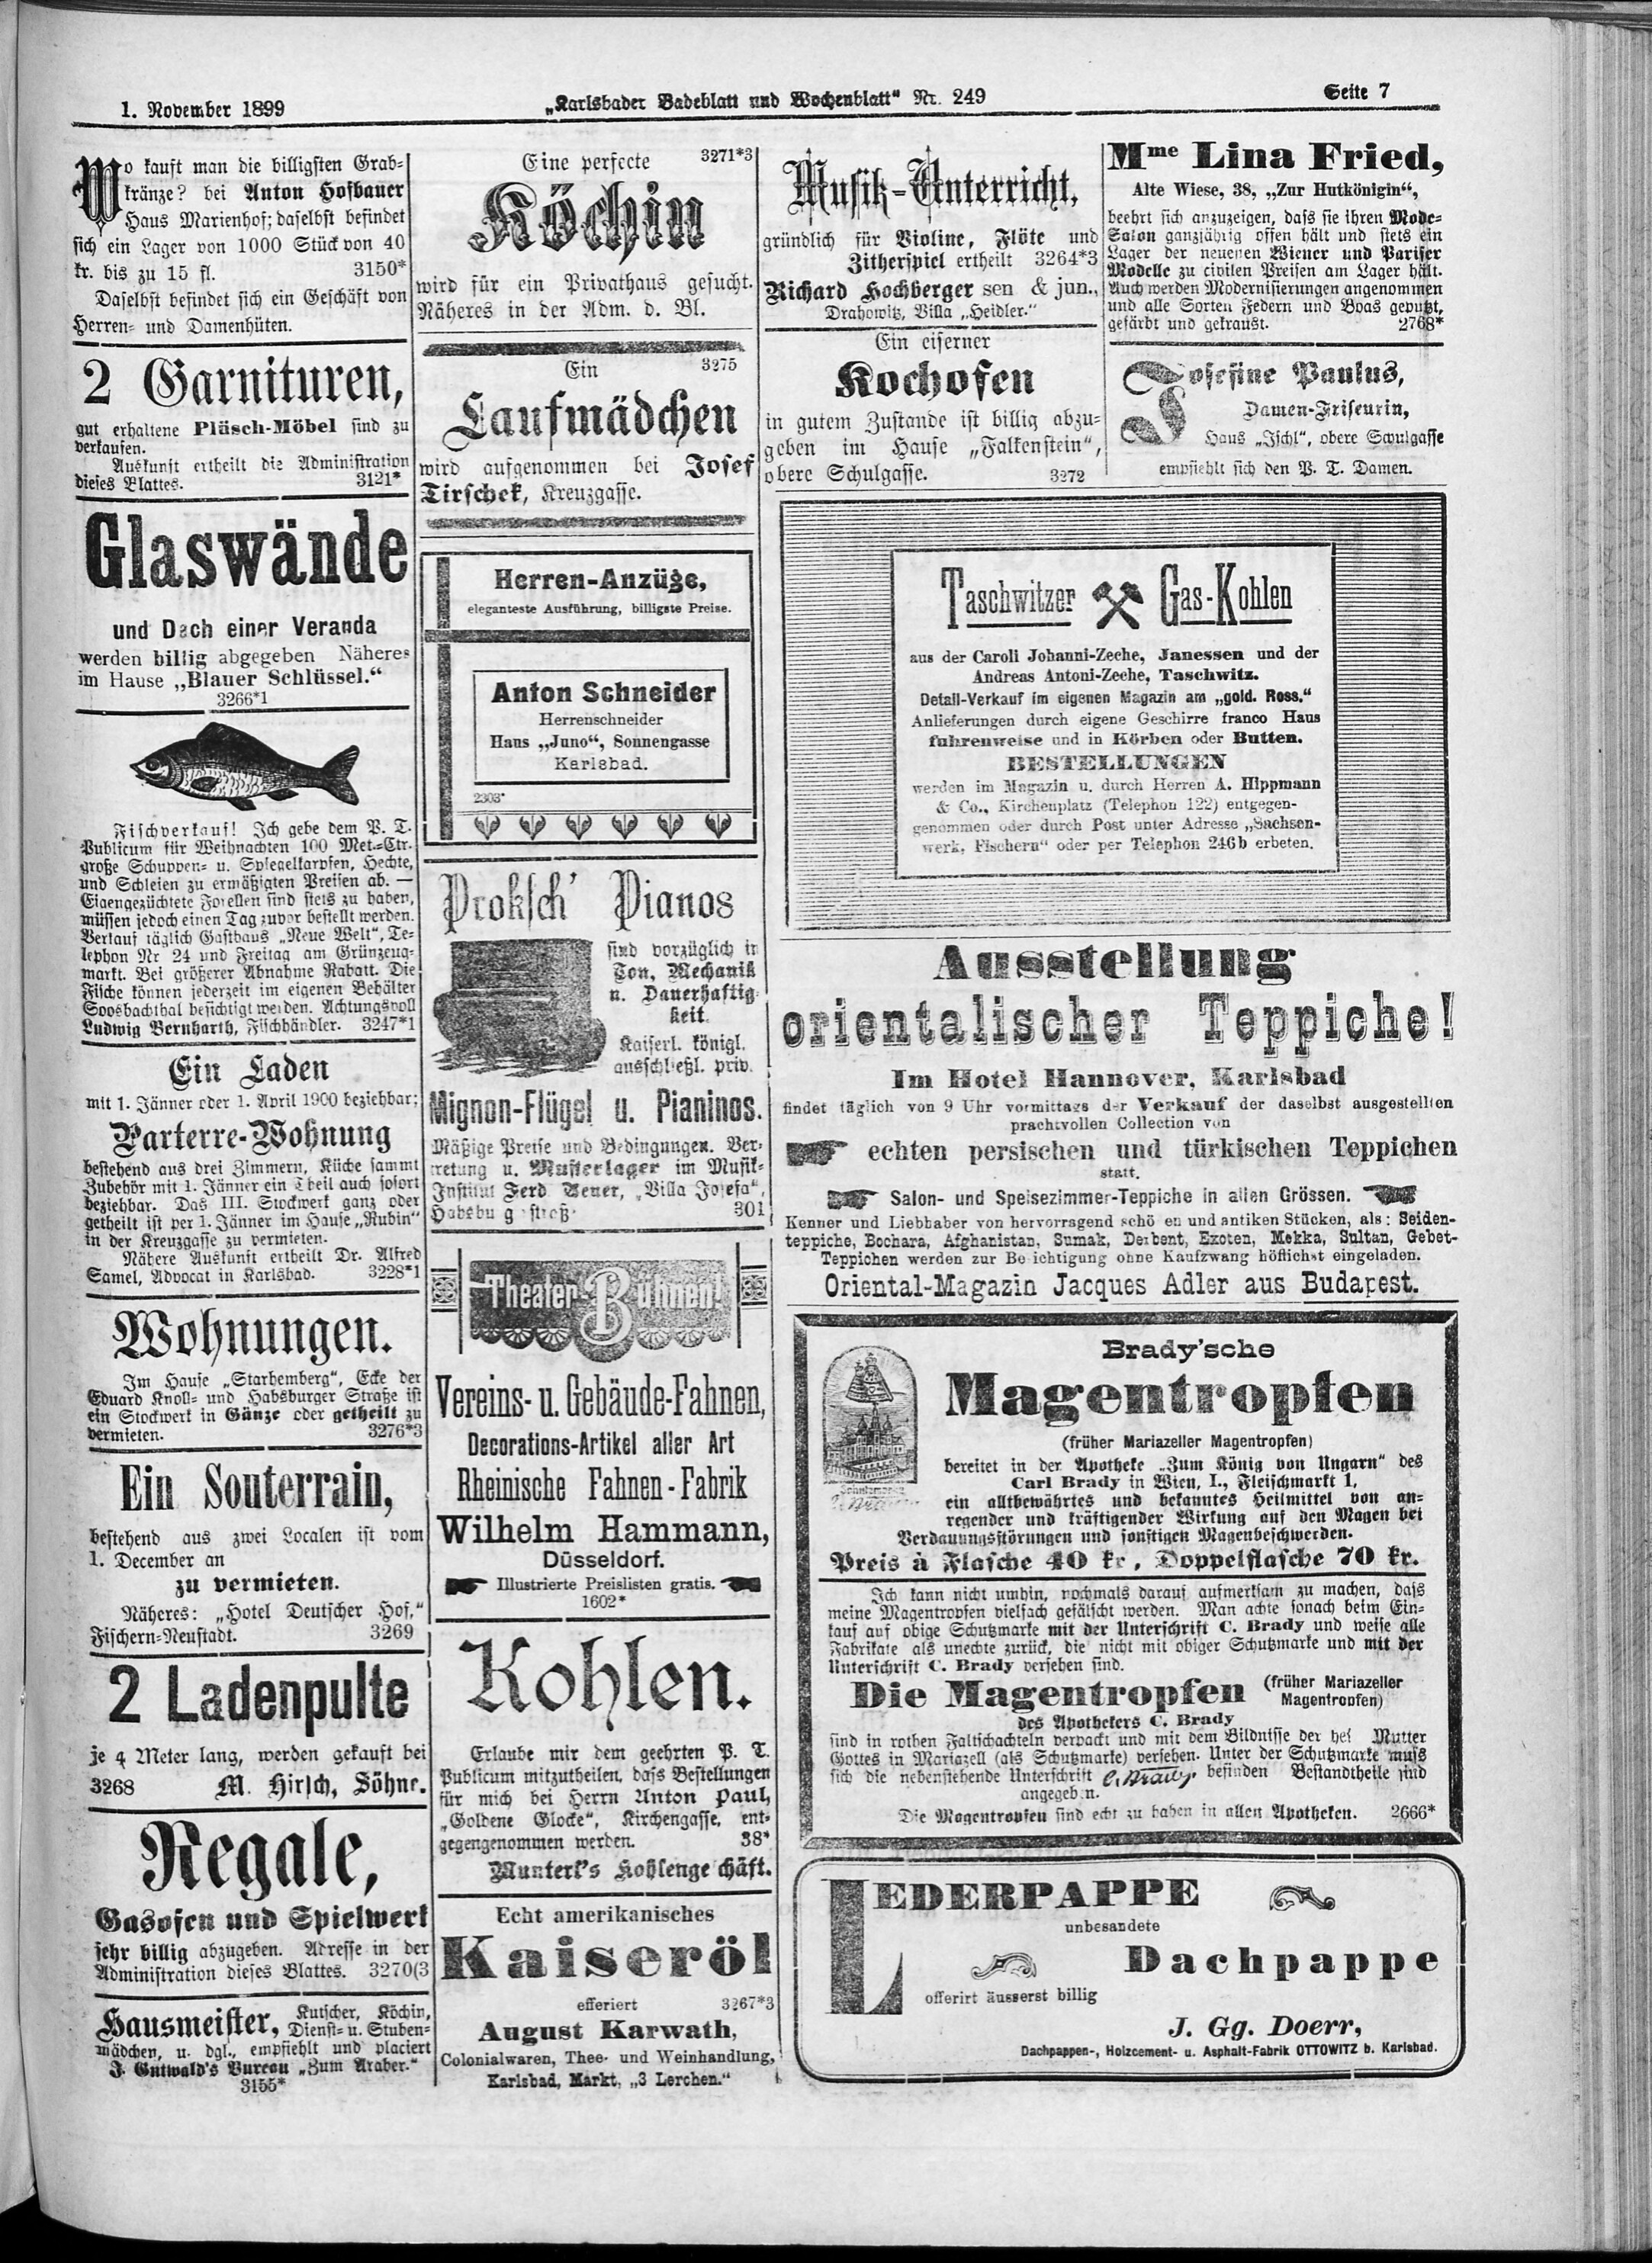 7. karlsbader-badeblatt-1899-11-01-n249_5785